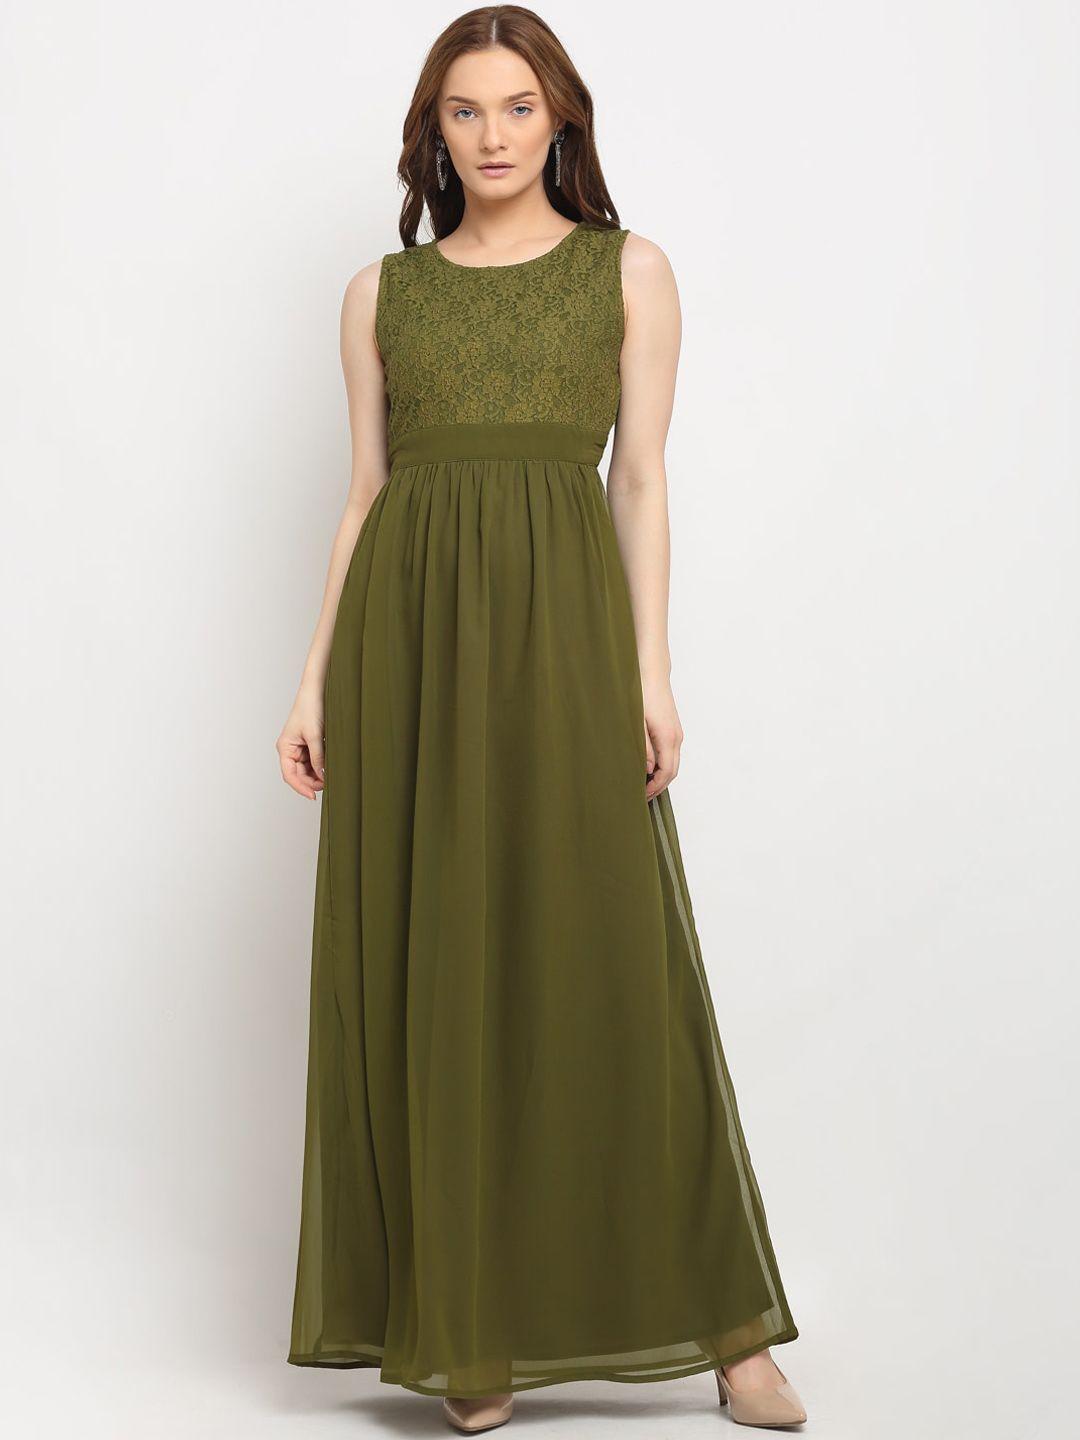 la zoire olive green georgette lace yoke maxi dress